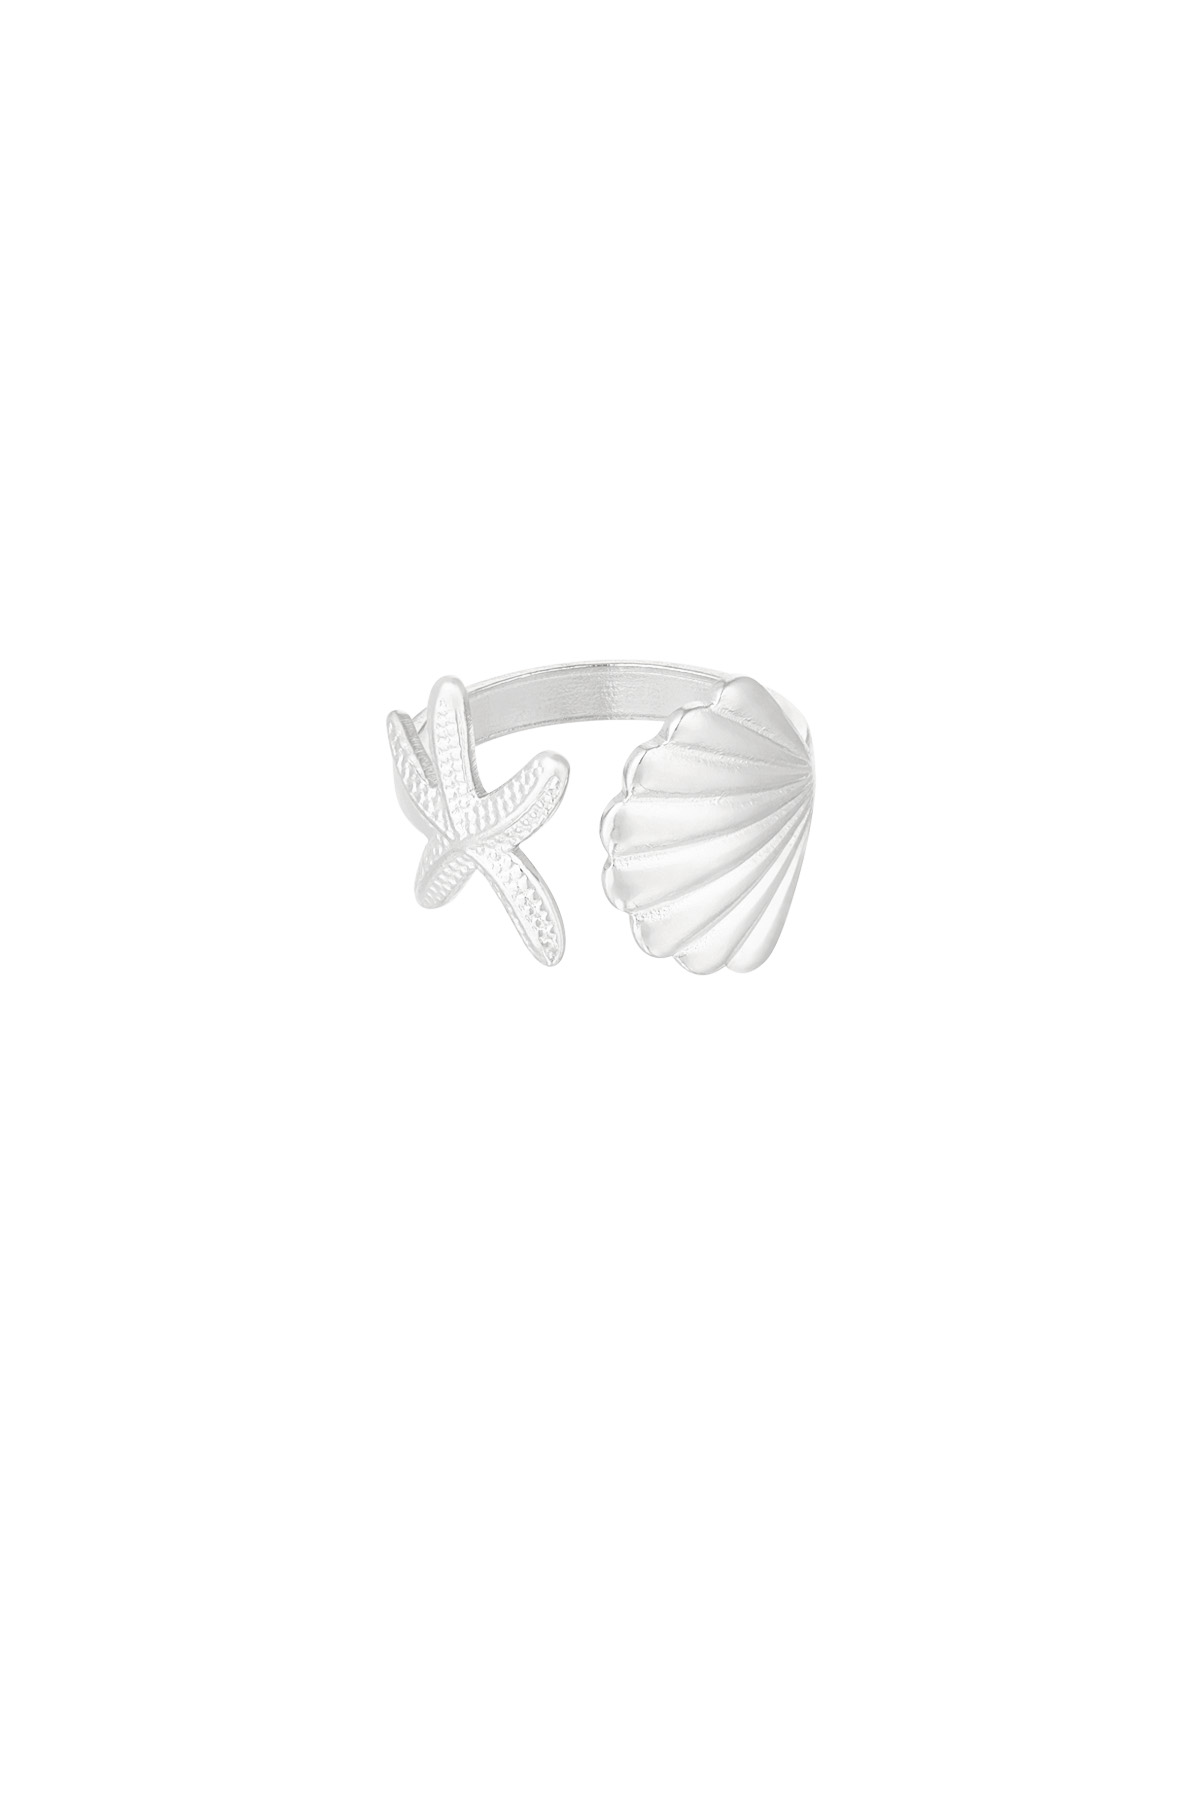 Anillo concha de mar vibes - plata